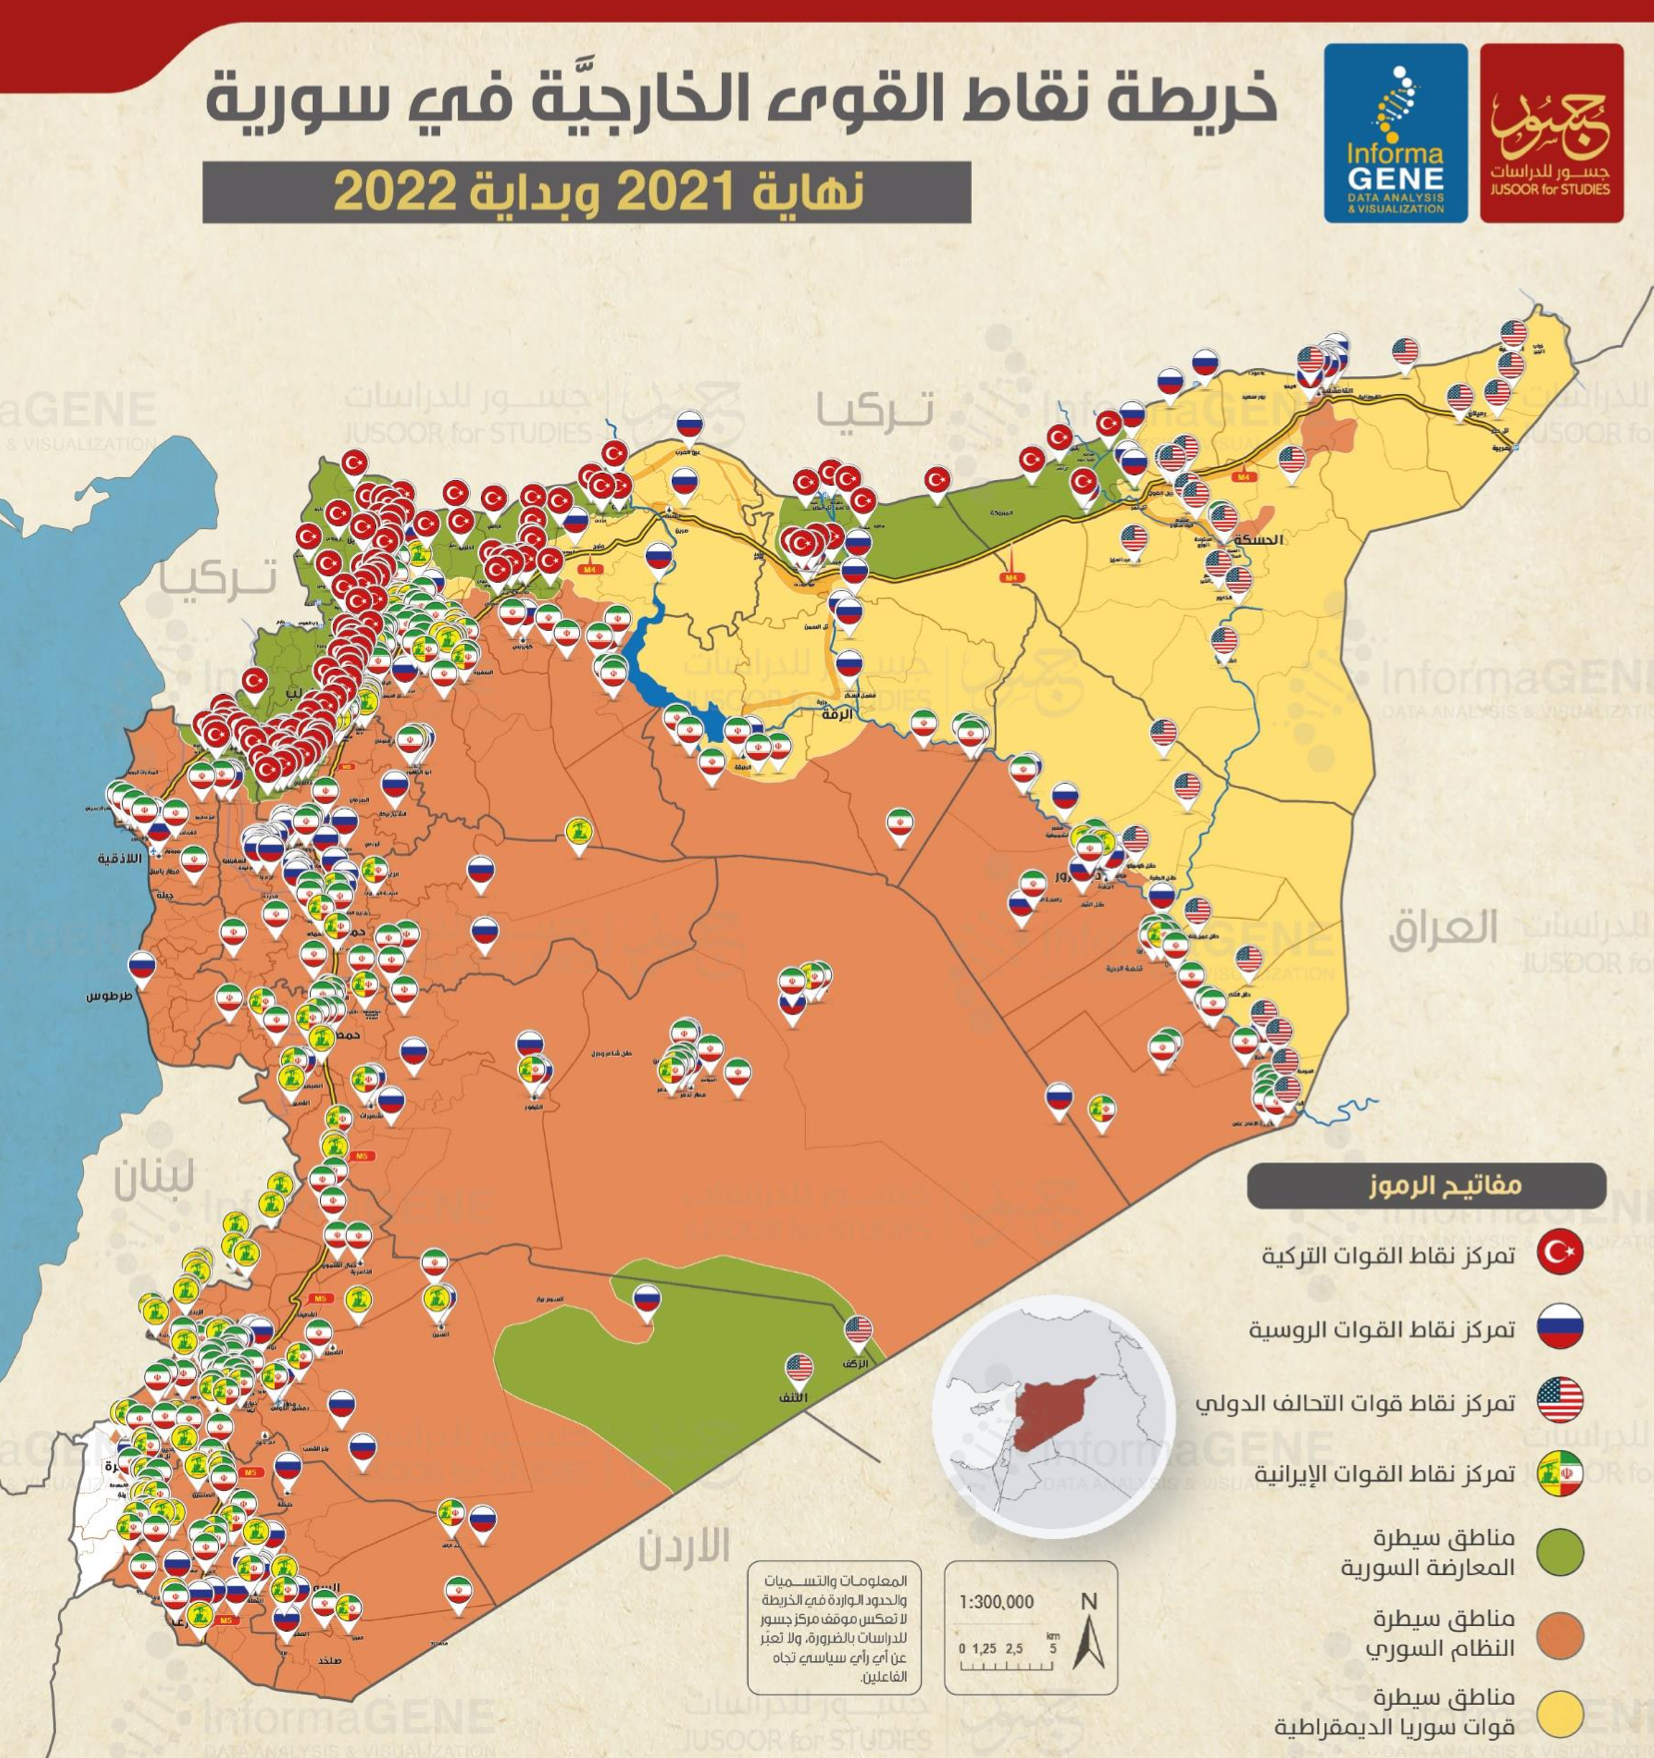 خريطة القواعد الأجنبية في سوريا نهاية عام 2021 (مركز جسور للدراسات)